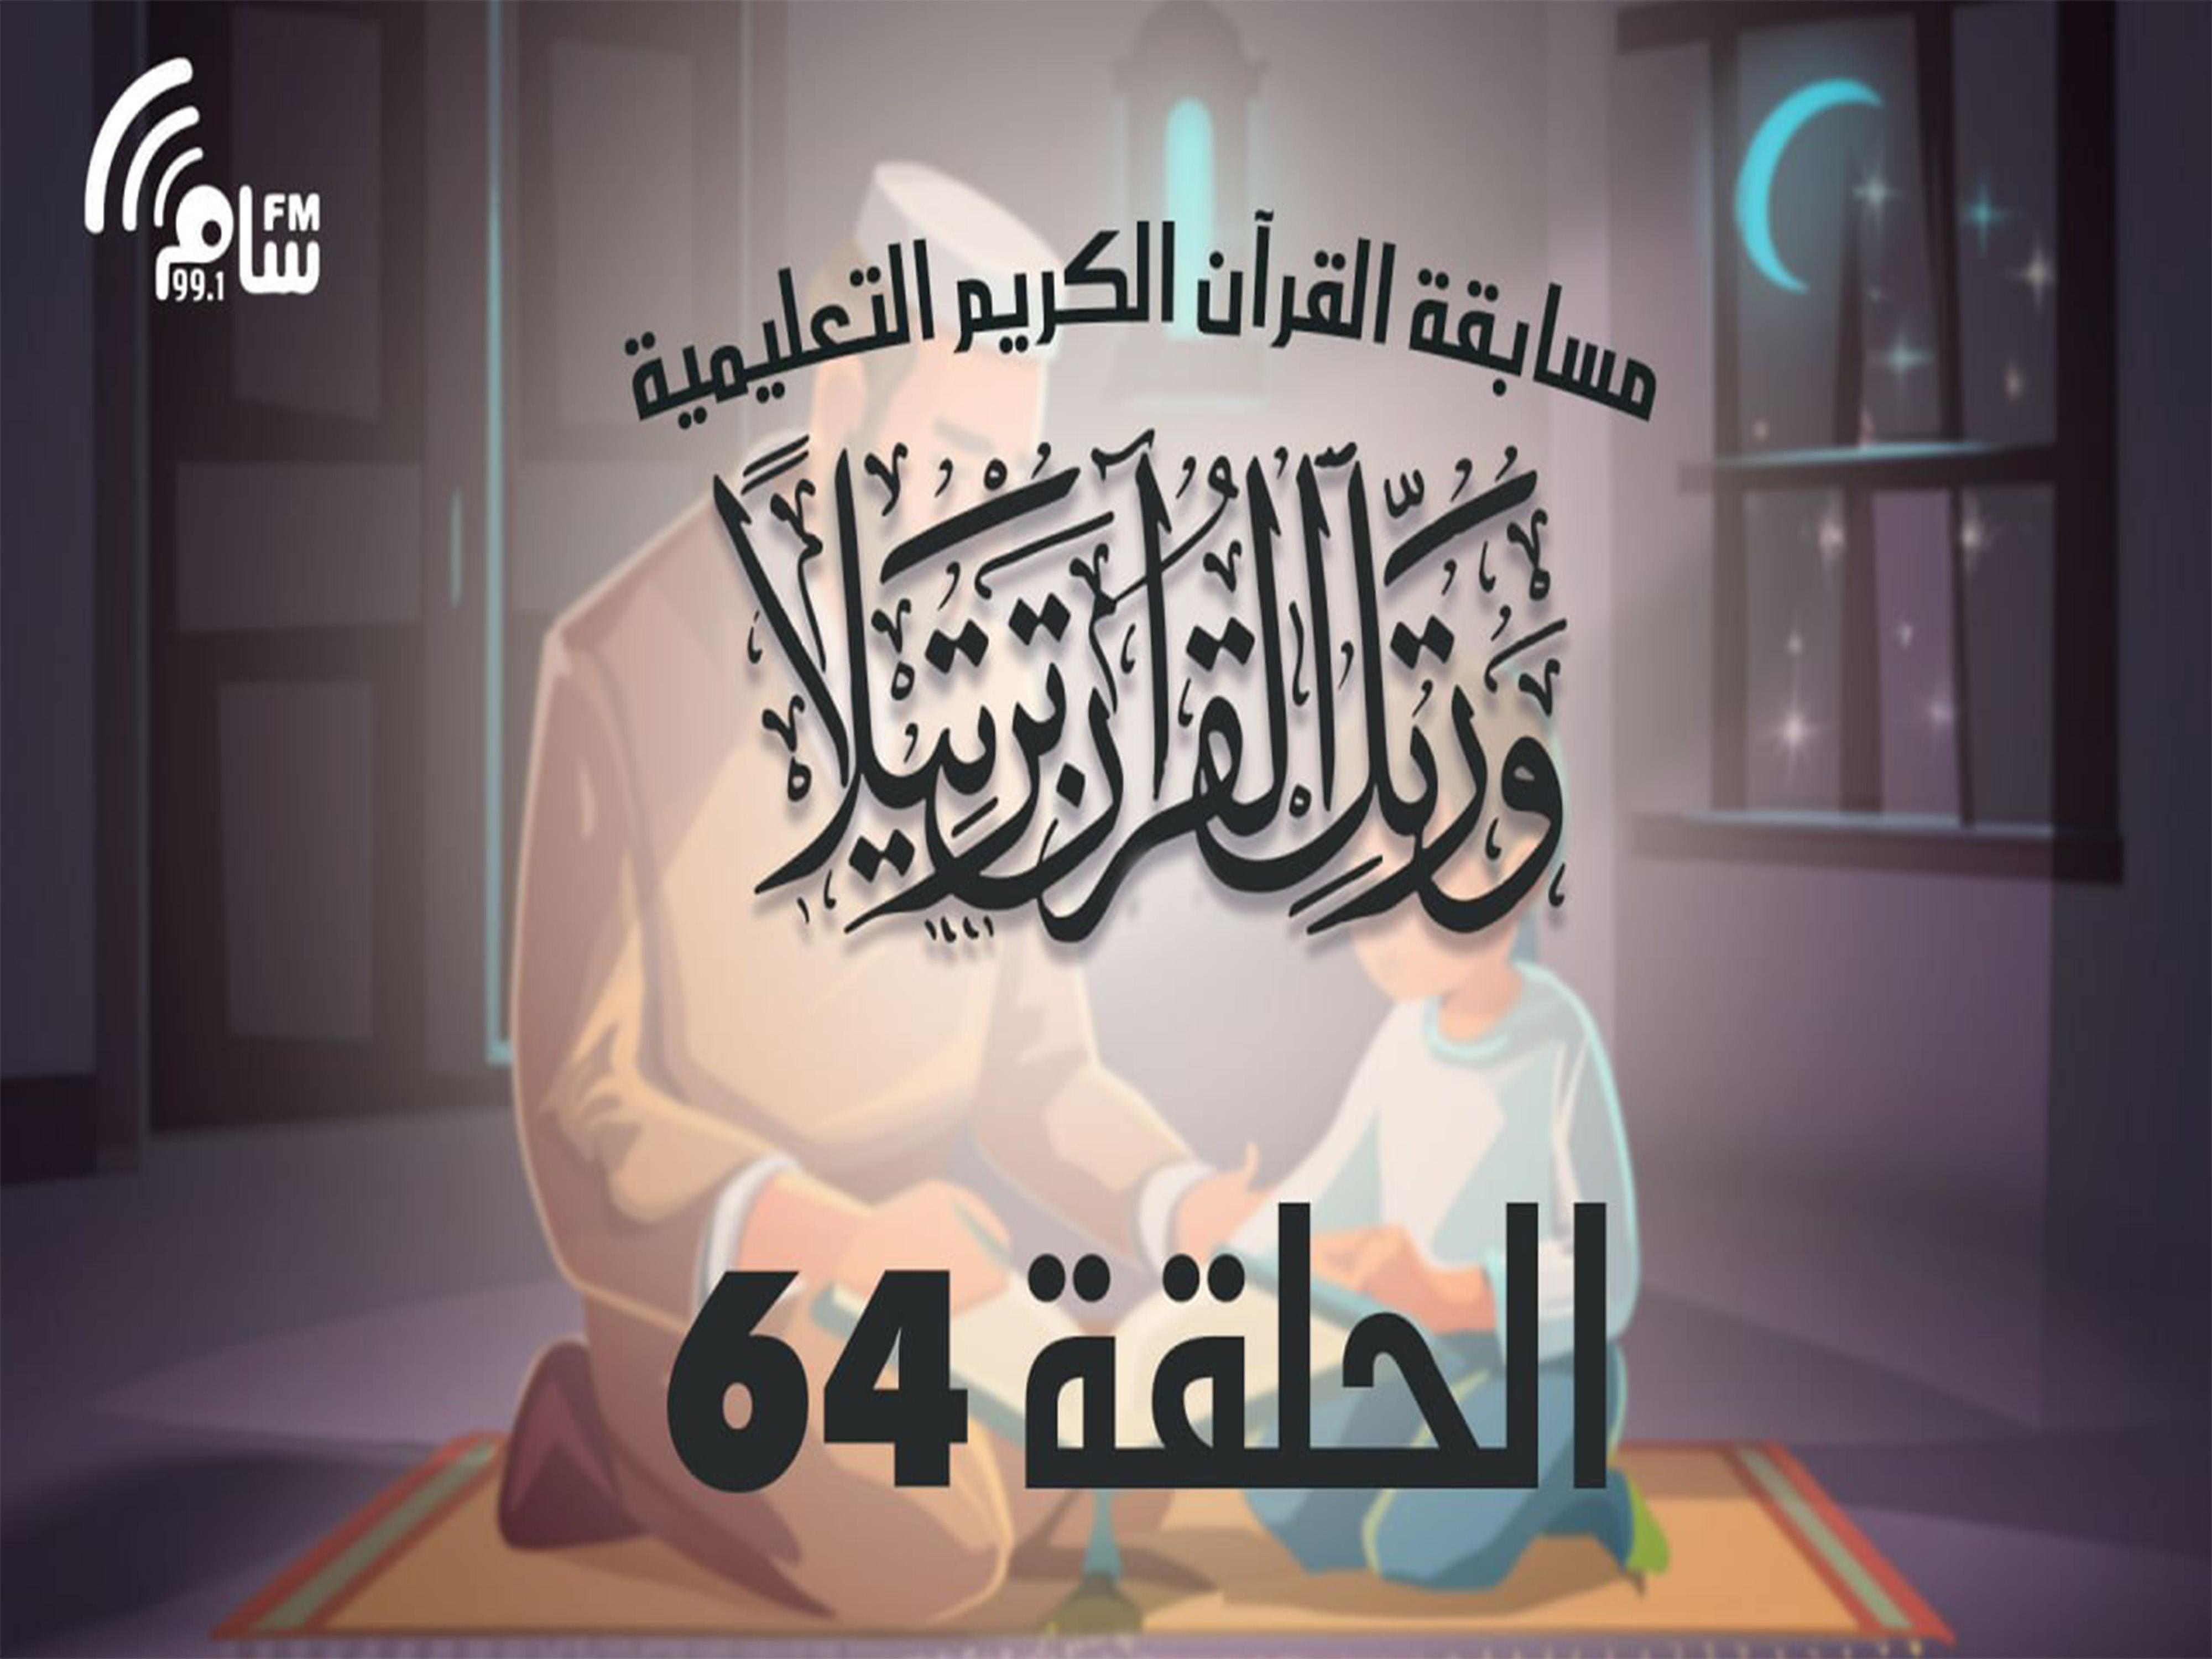 مسابقة القرآن الكريم الحلقة 64 انتاج اذاعة اسام اف ام